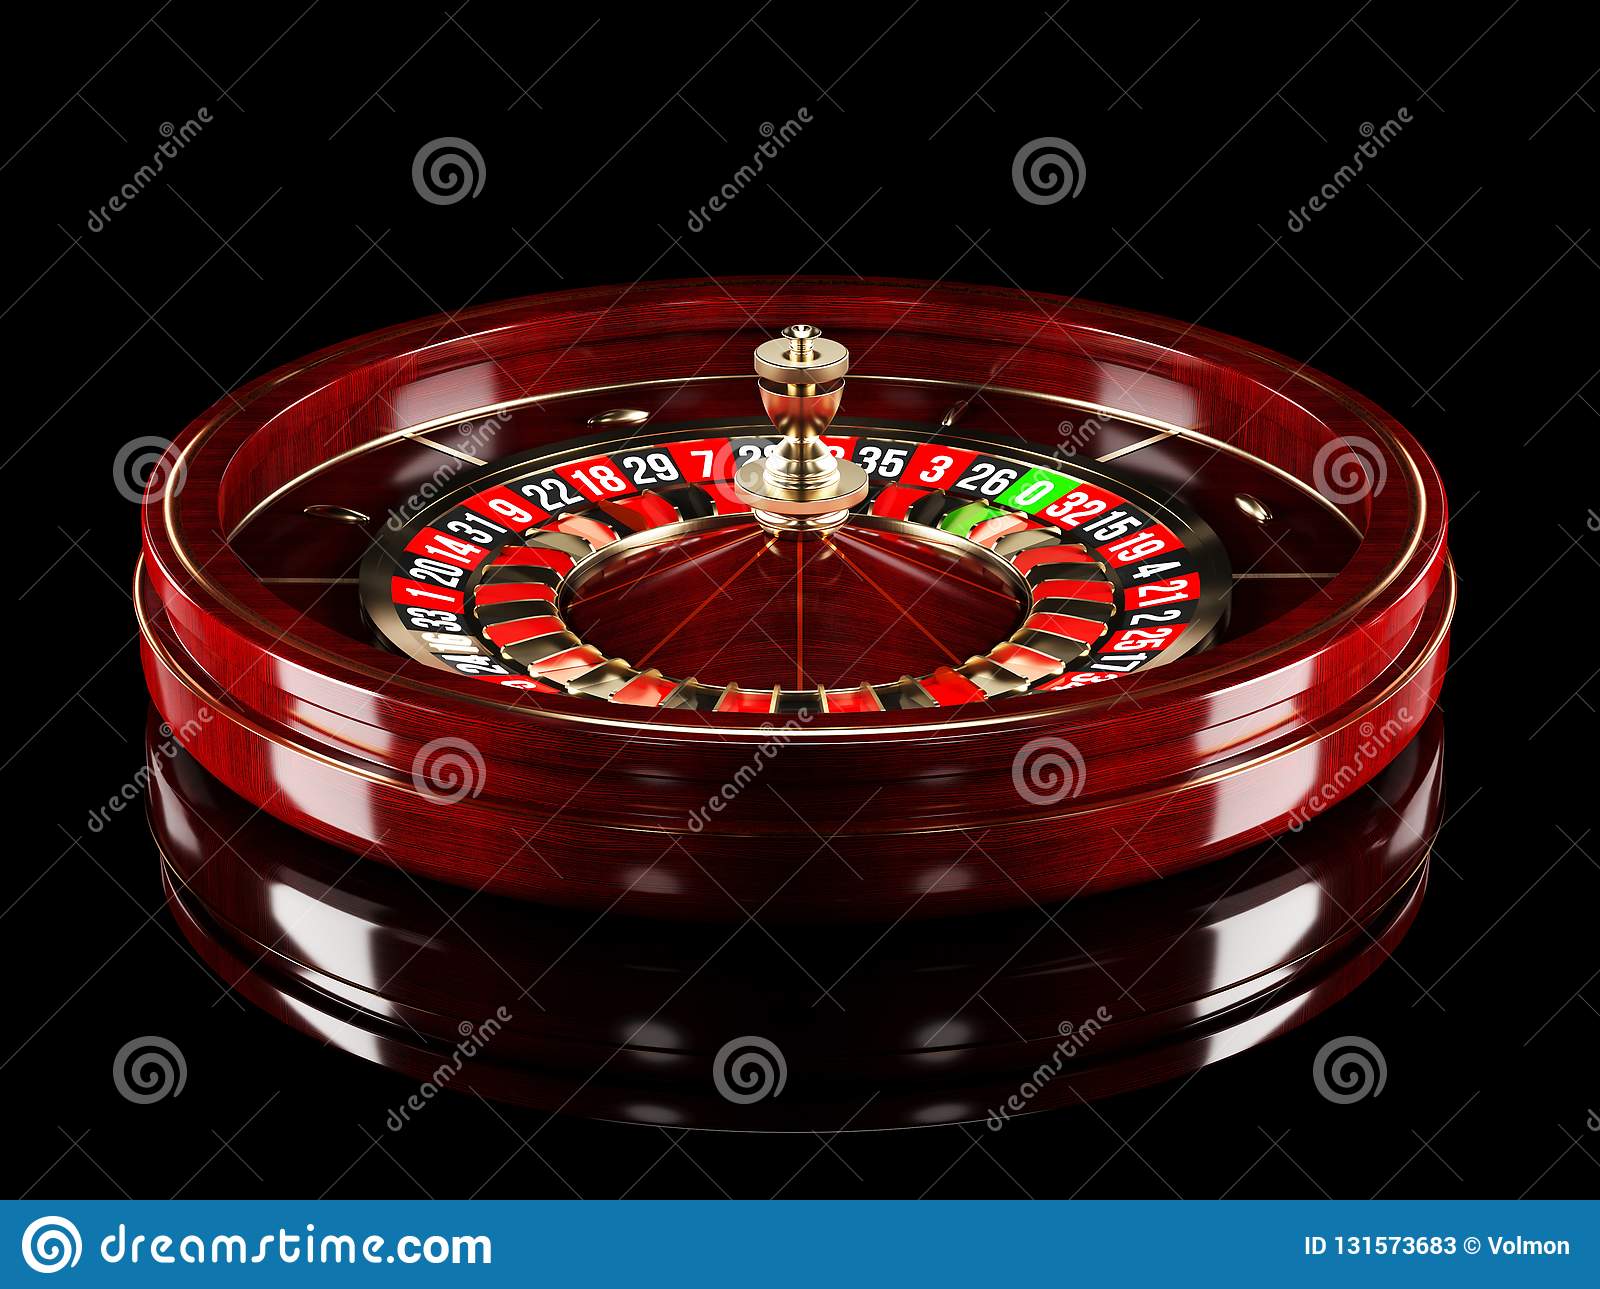 Juegos de casino gratis double down